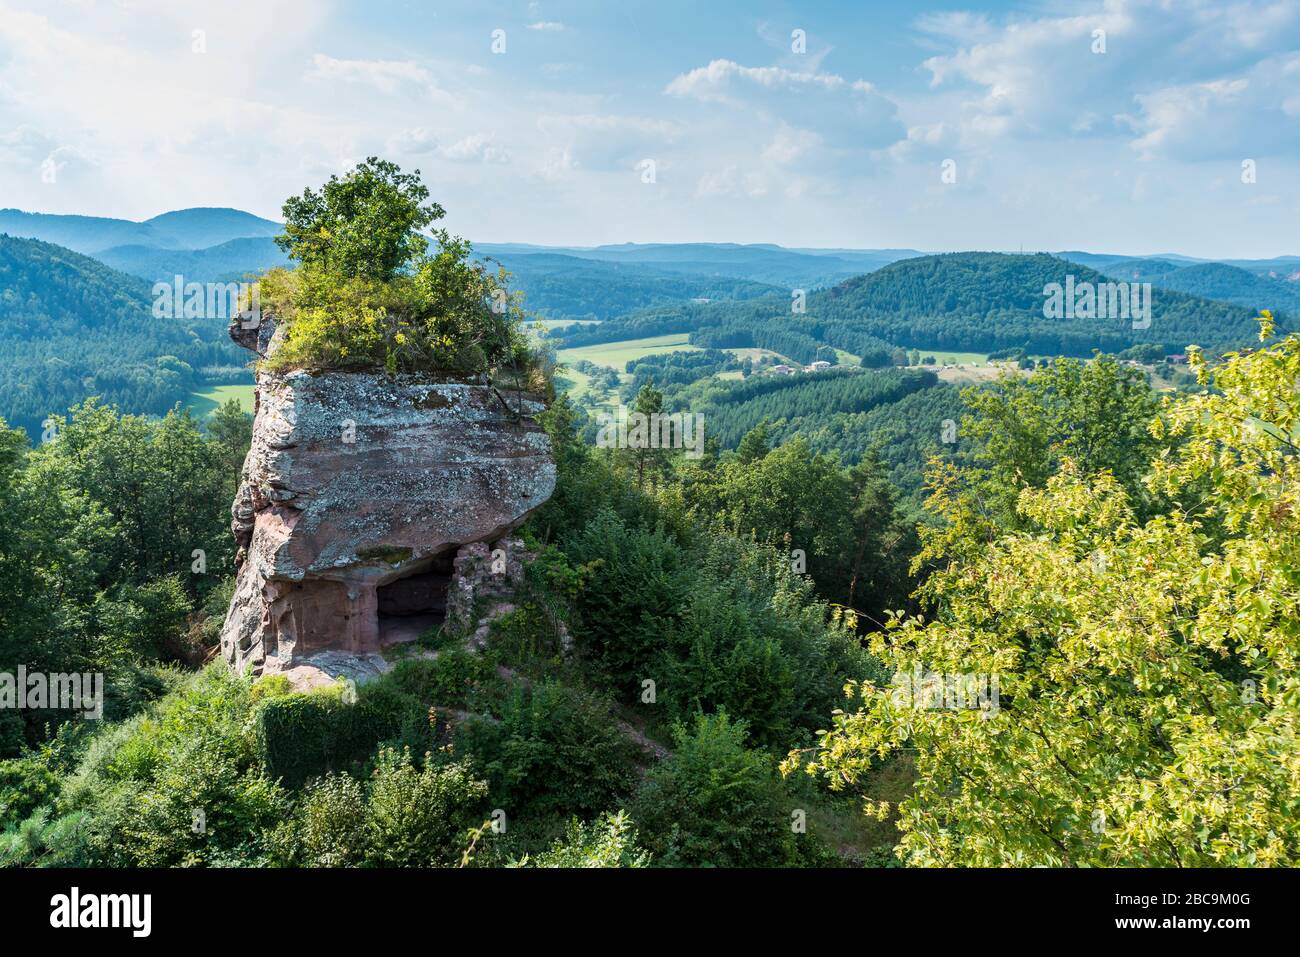 Les ruines du château de Drachenfels, un château de roche sculpté dans la pierre, avec une dent molaire, une tour semblable à la tête d'un dragon, comme plate-forme d'observation, colorée Banque D'Images